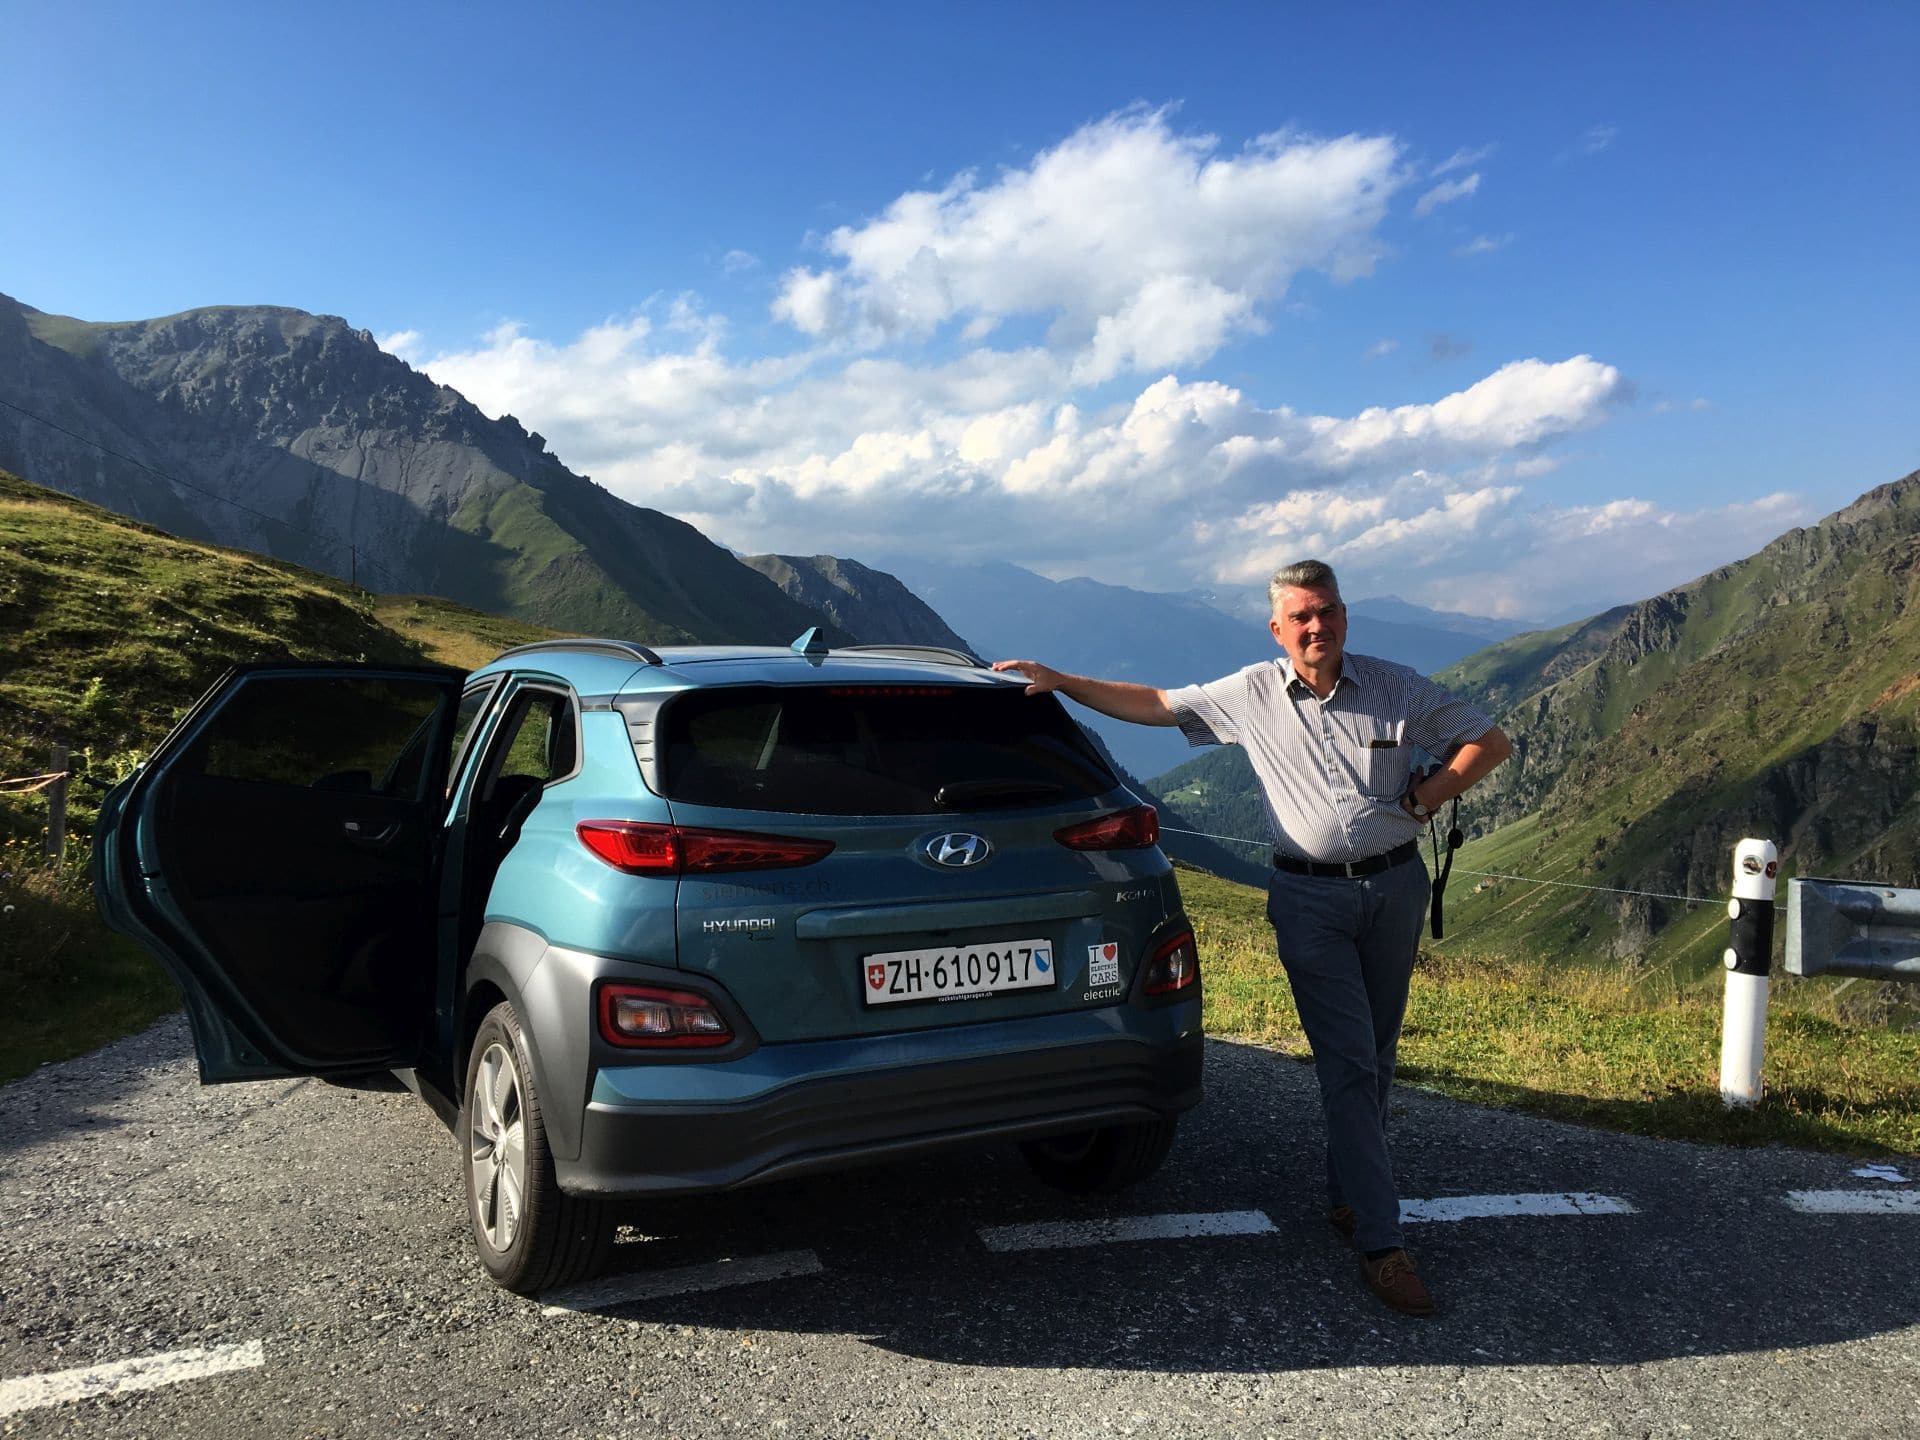 Jürgen Baumann / Kleine Pause in den Sommerferien in Südtirol kurz vor dem Umbrail Pass in Graubünden